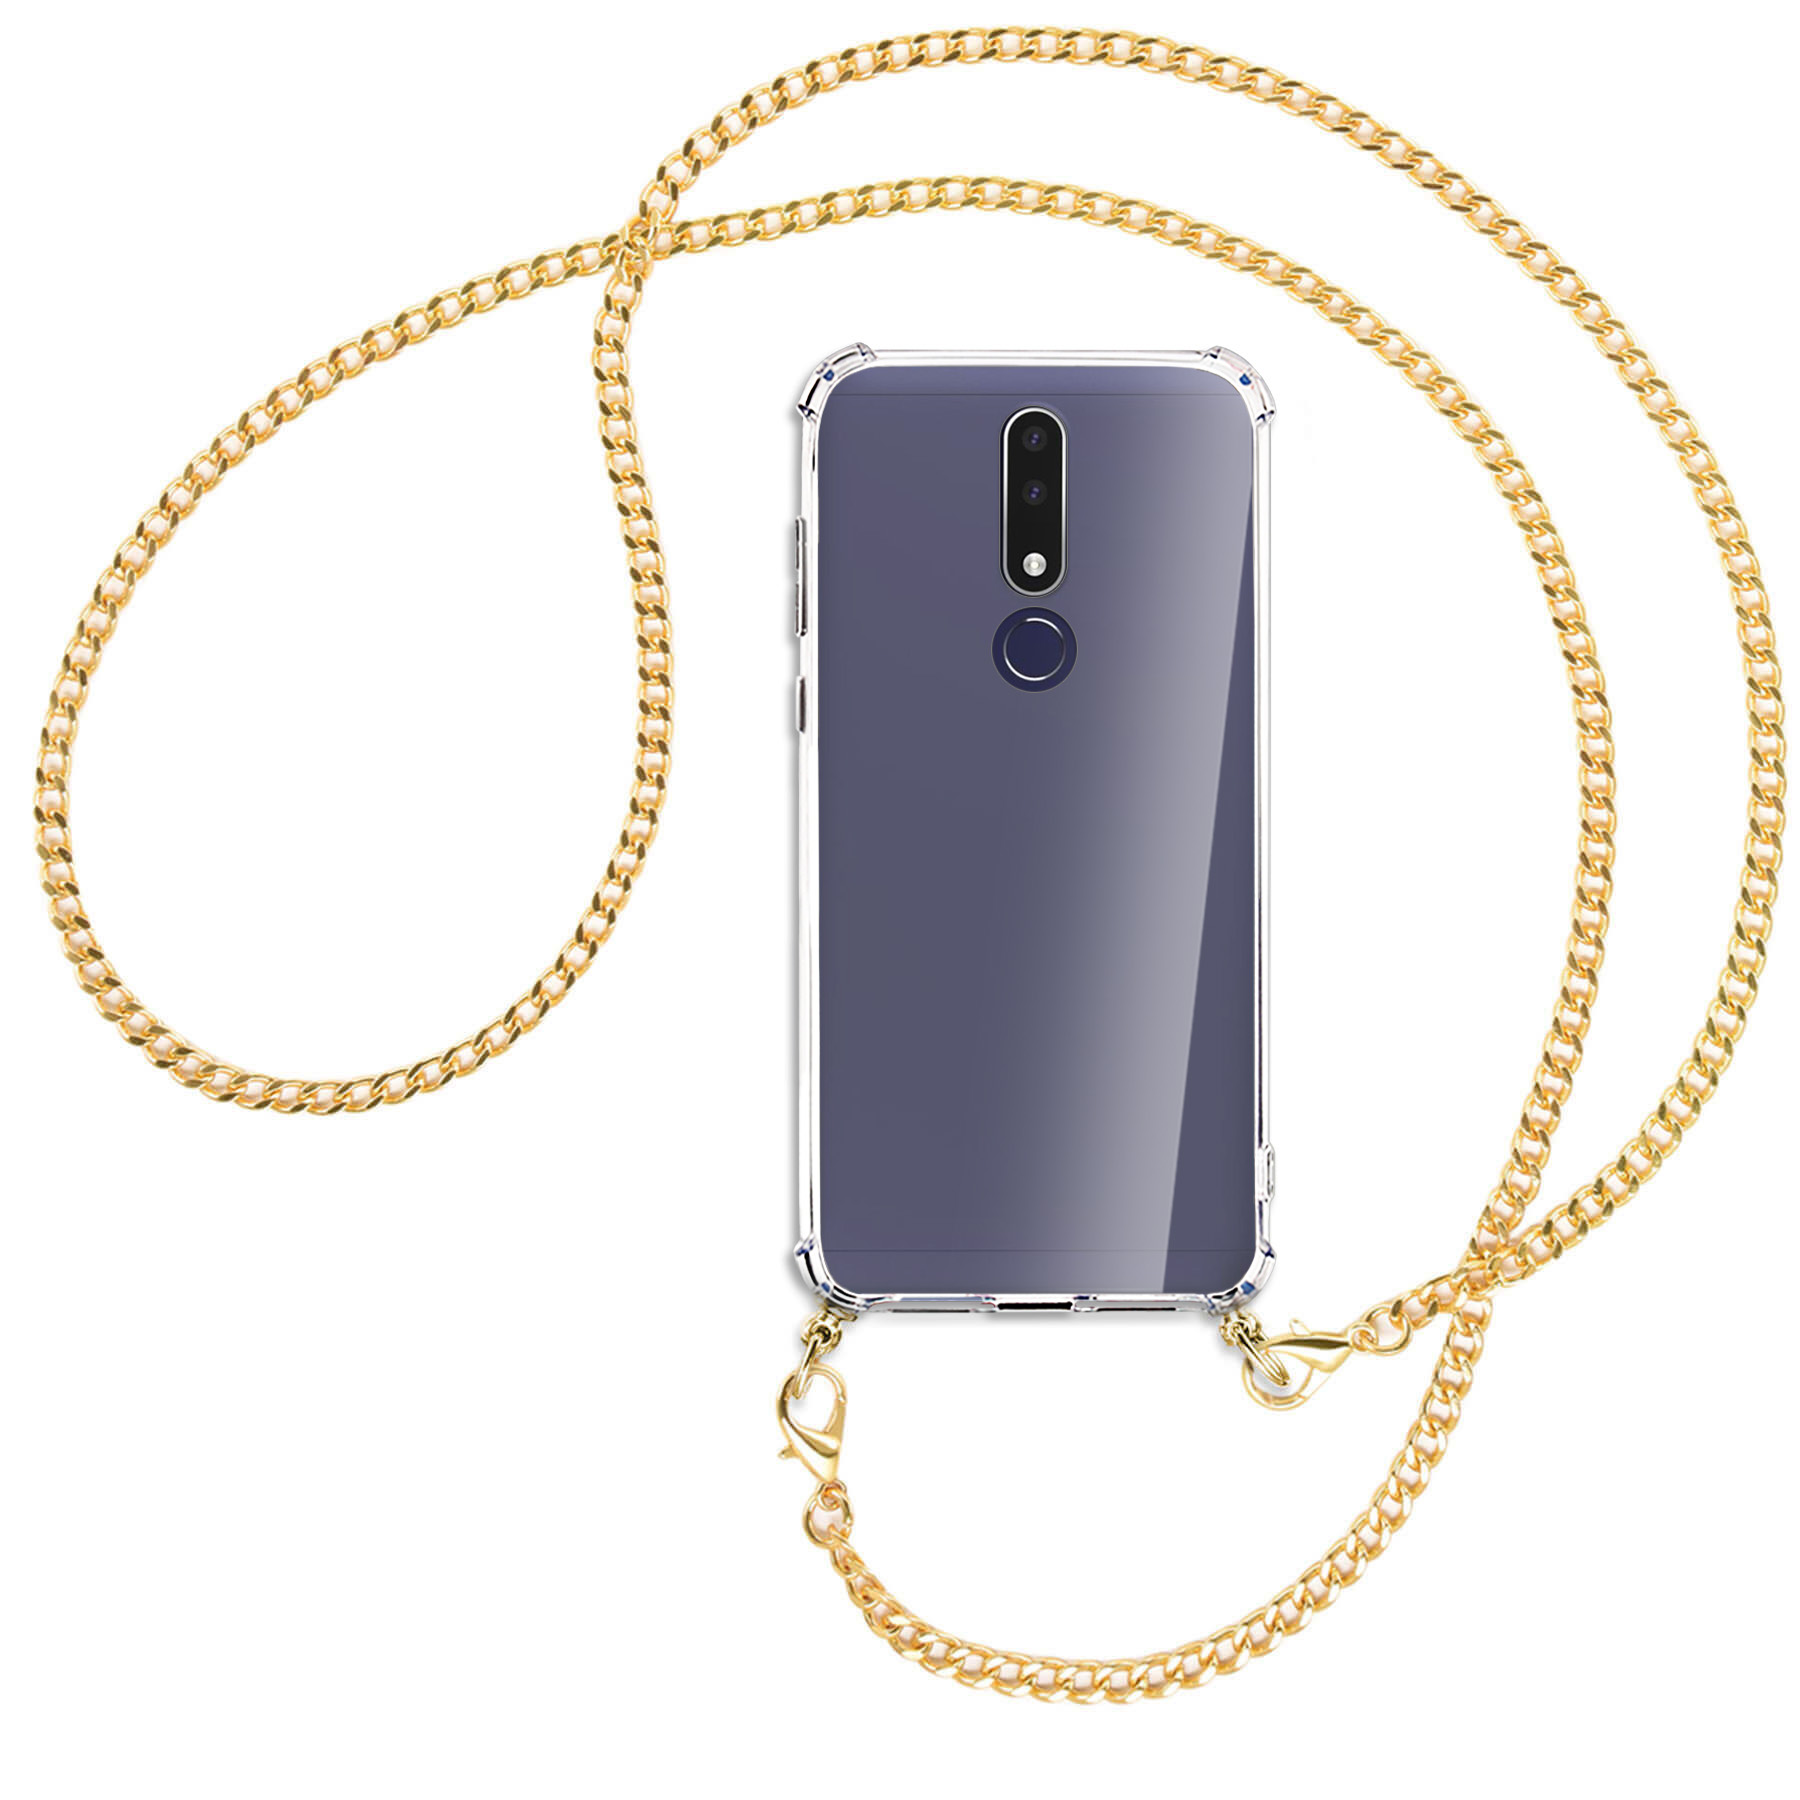 MTB MORE ENERGY 2019, (goldfarben) 3.1 Kette Plus Backcover, Nokia, Umhänge-Hülle mit Metallkette